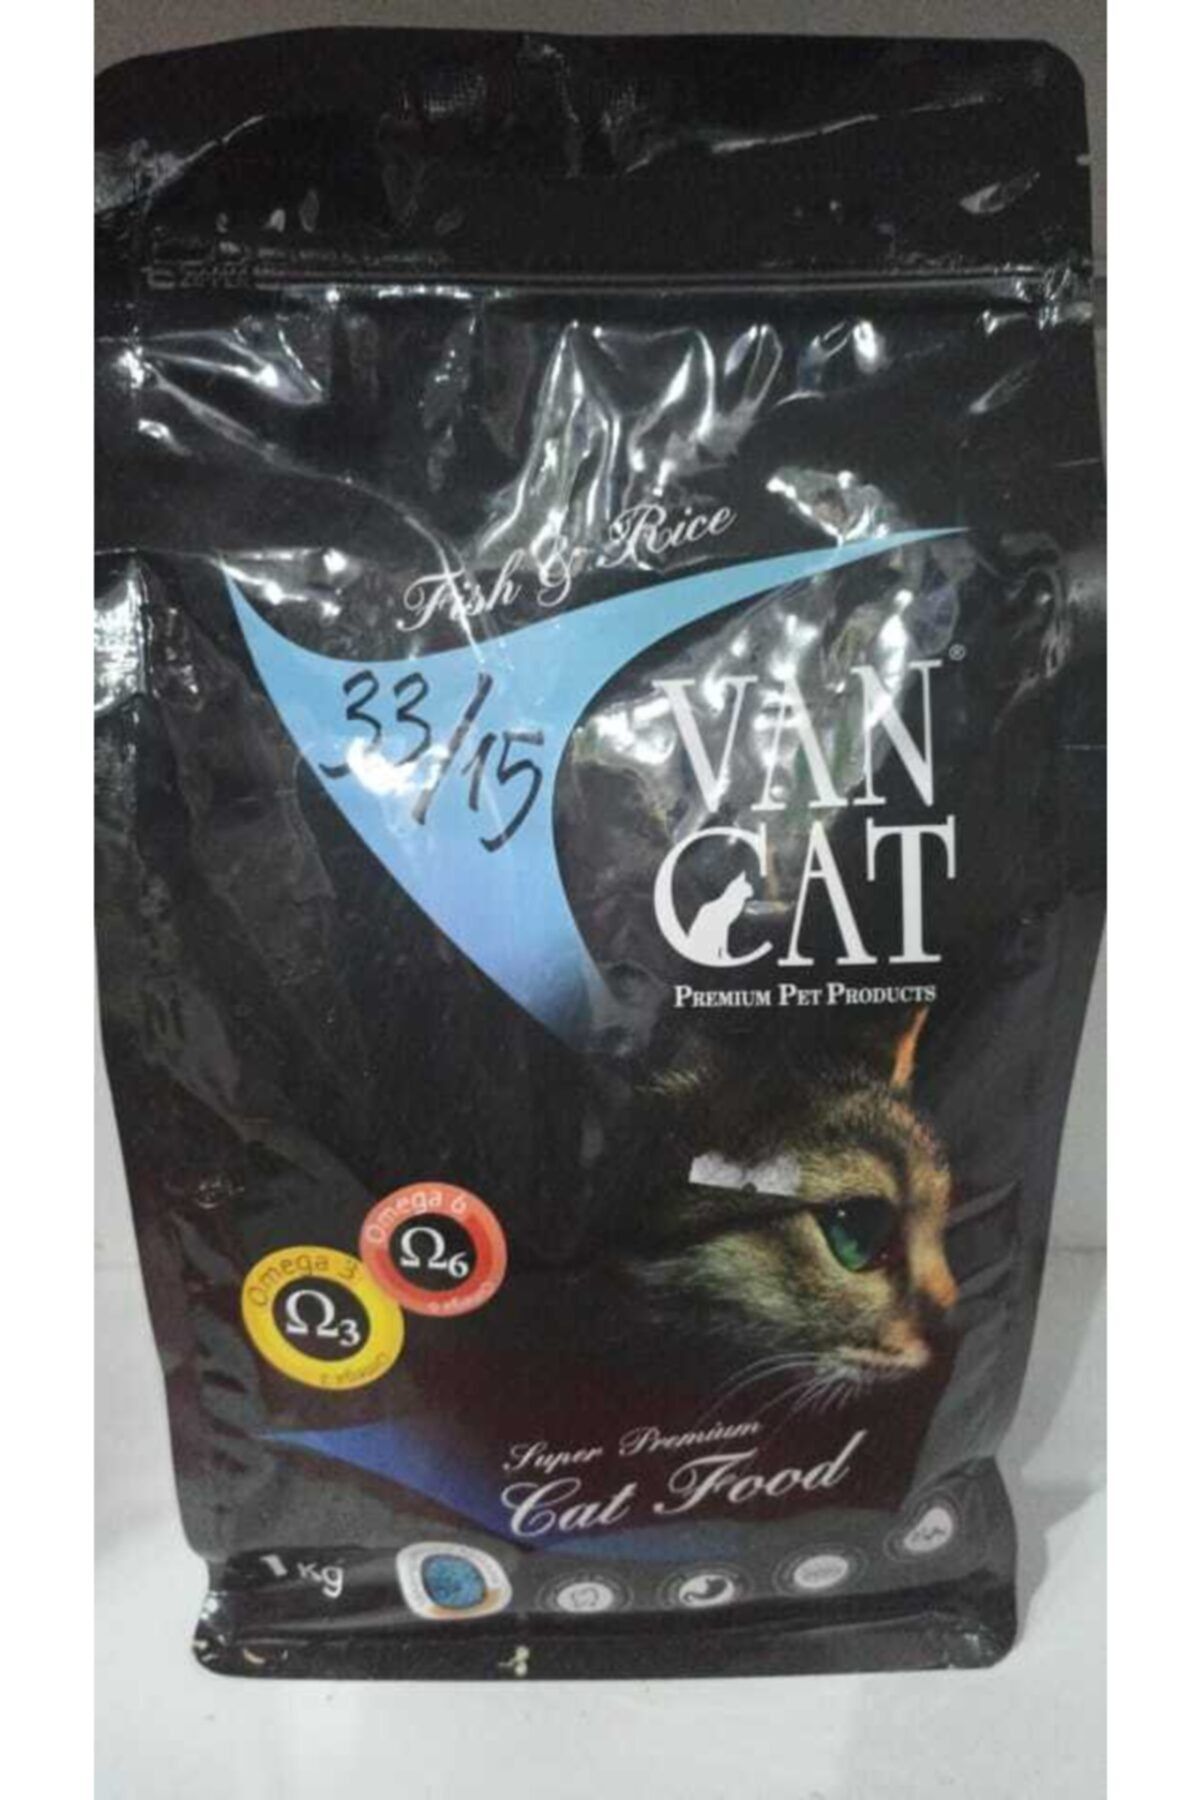 Vancat Van Cat Fish And Rice